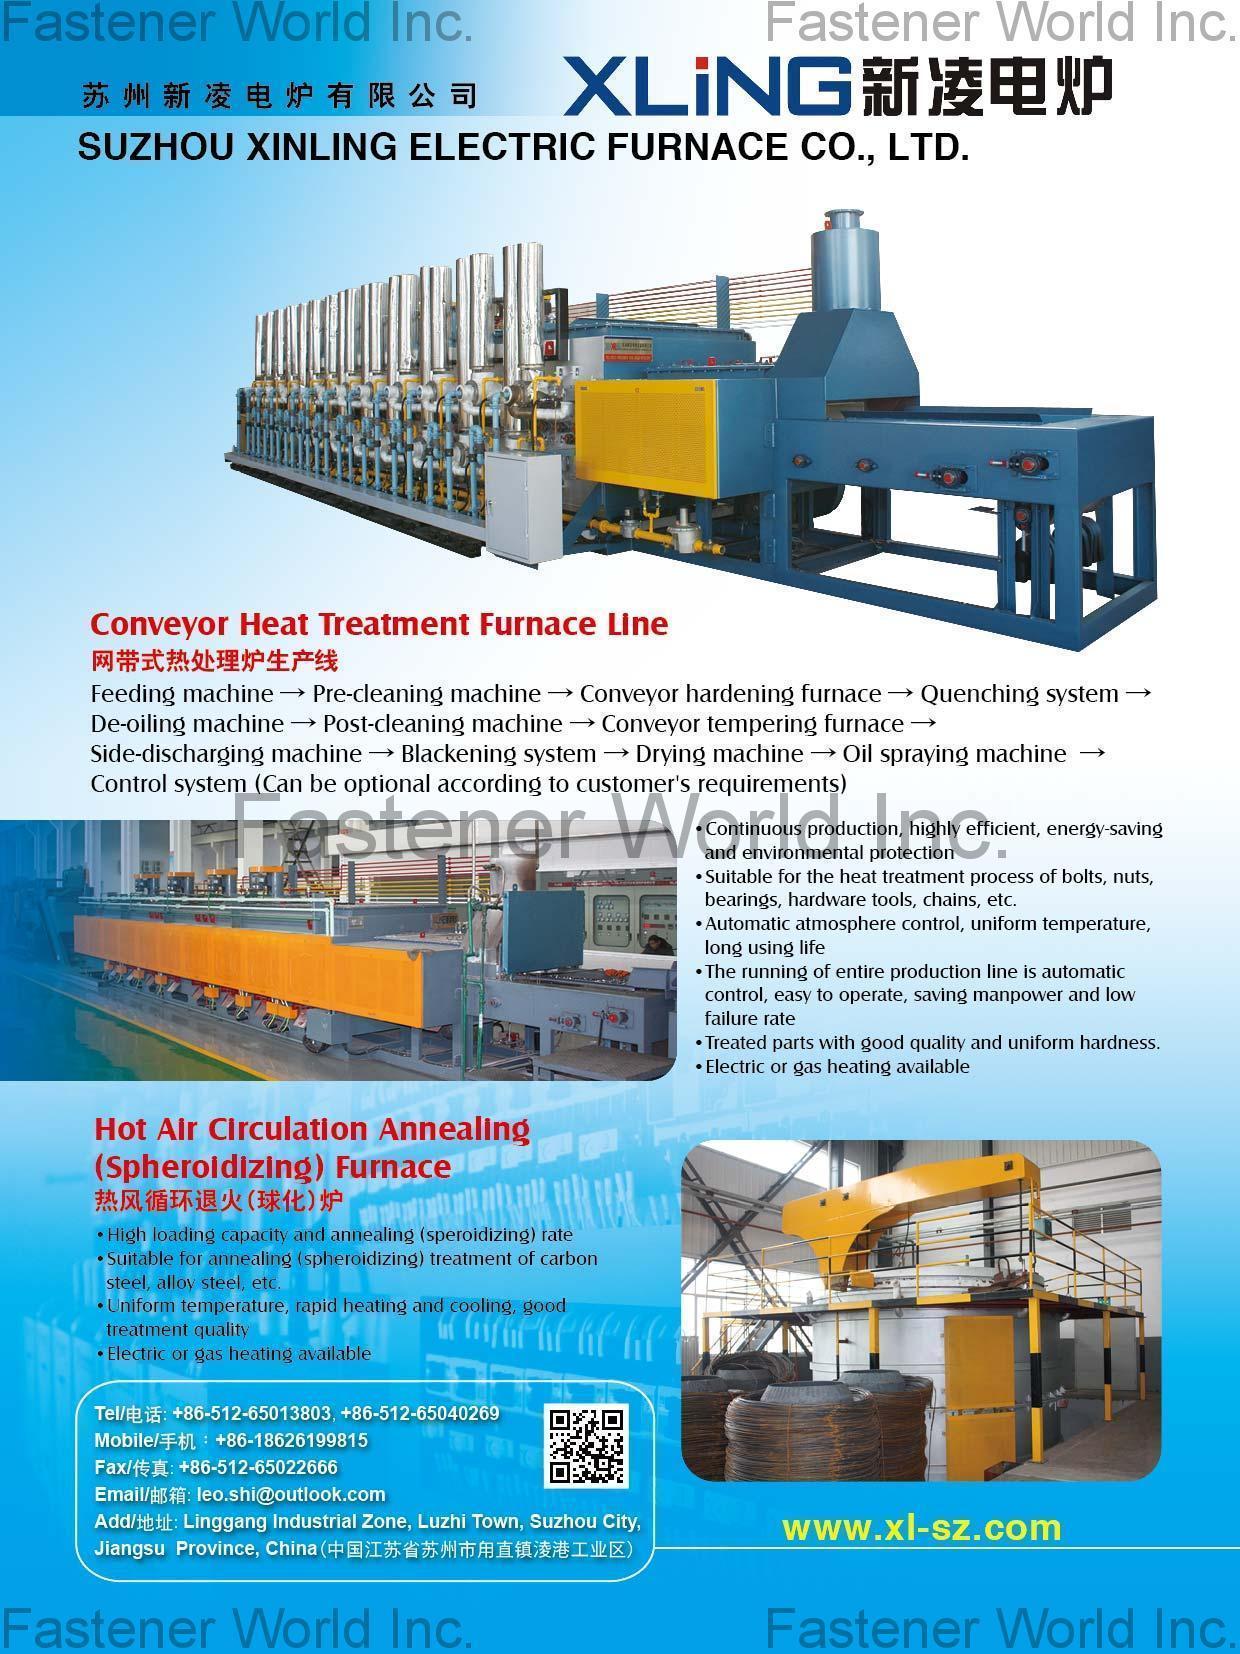 SUZHOU XINLING ELECTRIC FURNACE CO., LTD. , Conveyor Heat Treatment Furnace, Hot Air Circulation Annealing (Spheroidizing) Furnace , Heat Treatment Furnace